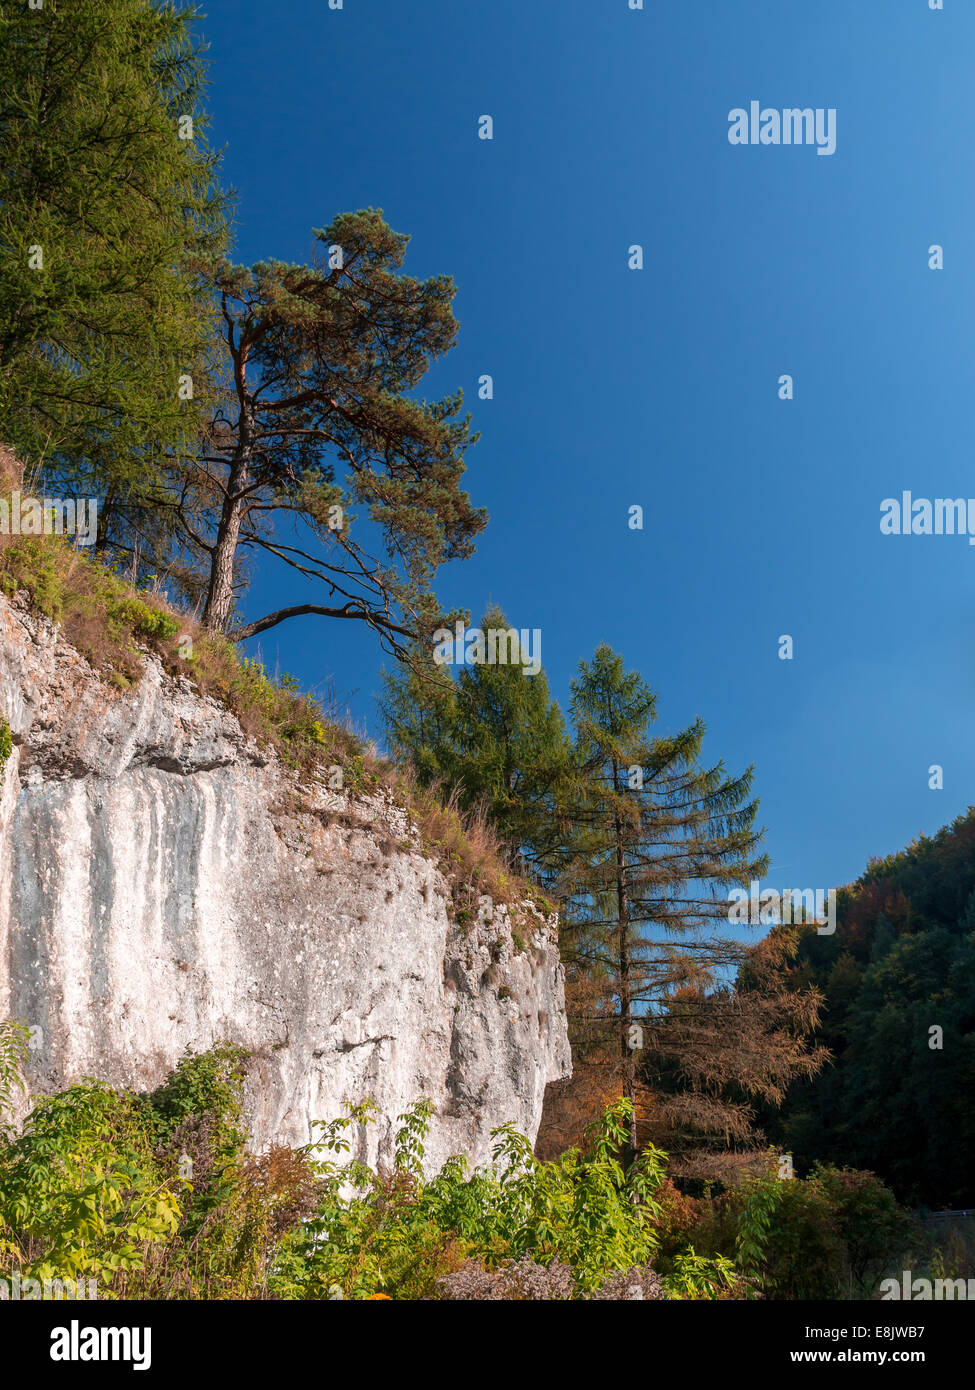 Ojcow Parc national avec les roches calcaires à l'automne du temps, partie d'Krakow-Czestochowa Upland, Pologne Banque D'Images